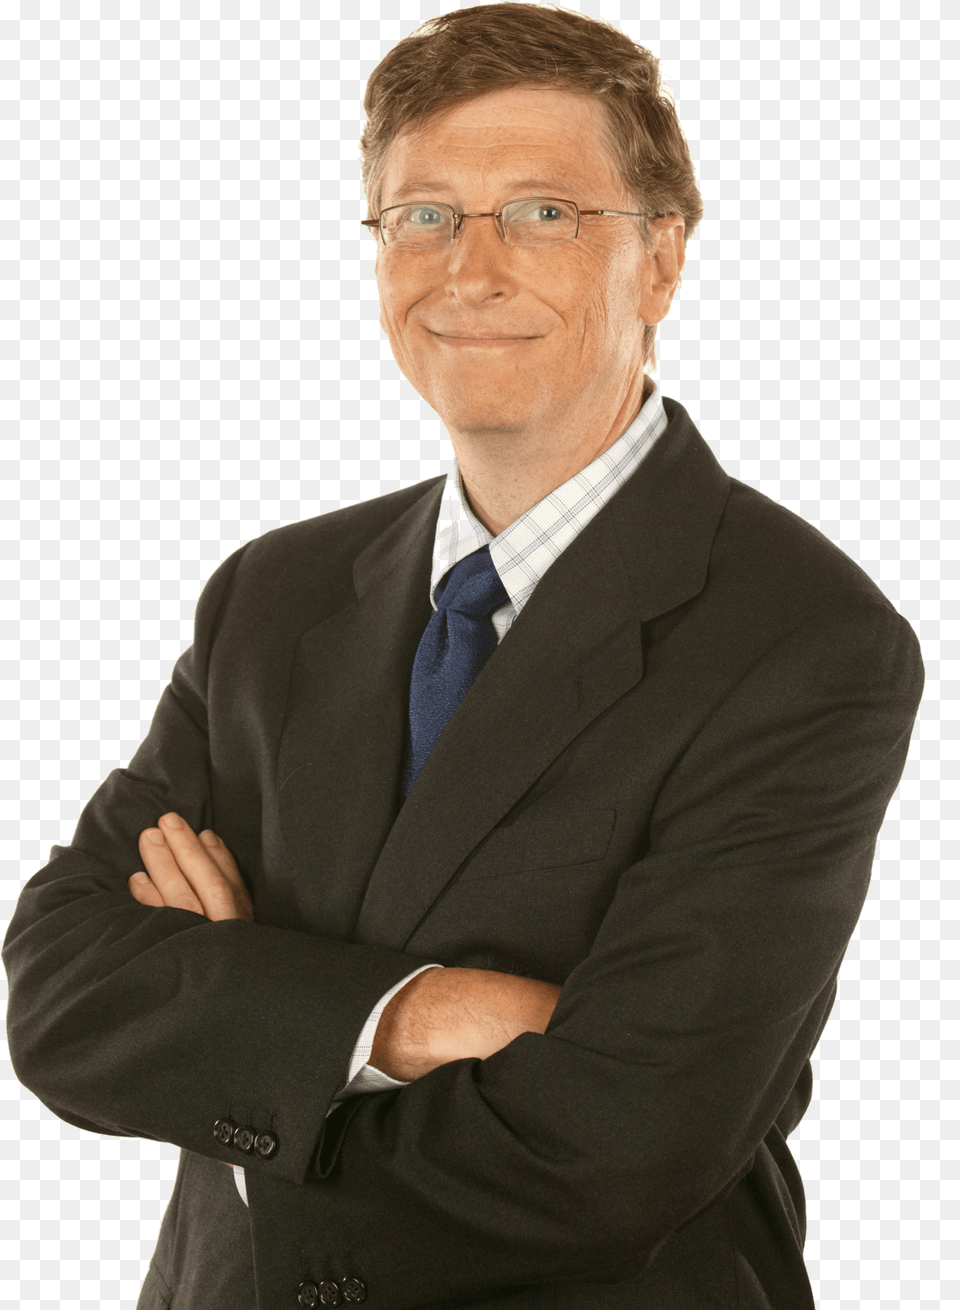 Bill Gates Suit Bill Gates, Accessories, Tie, Portrait, Photography Png Image